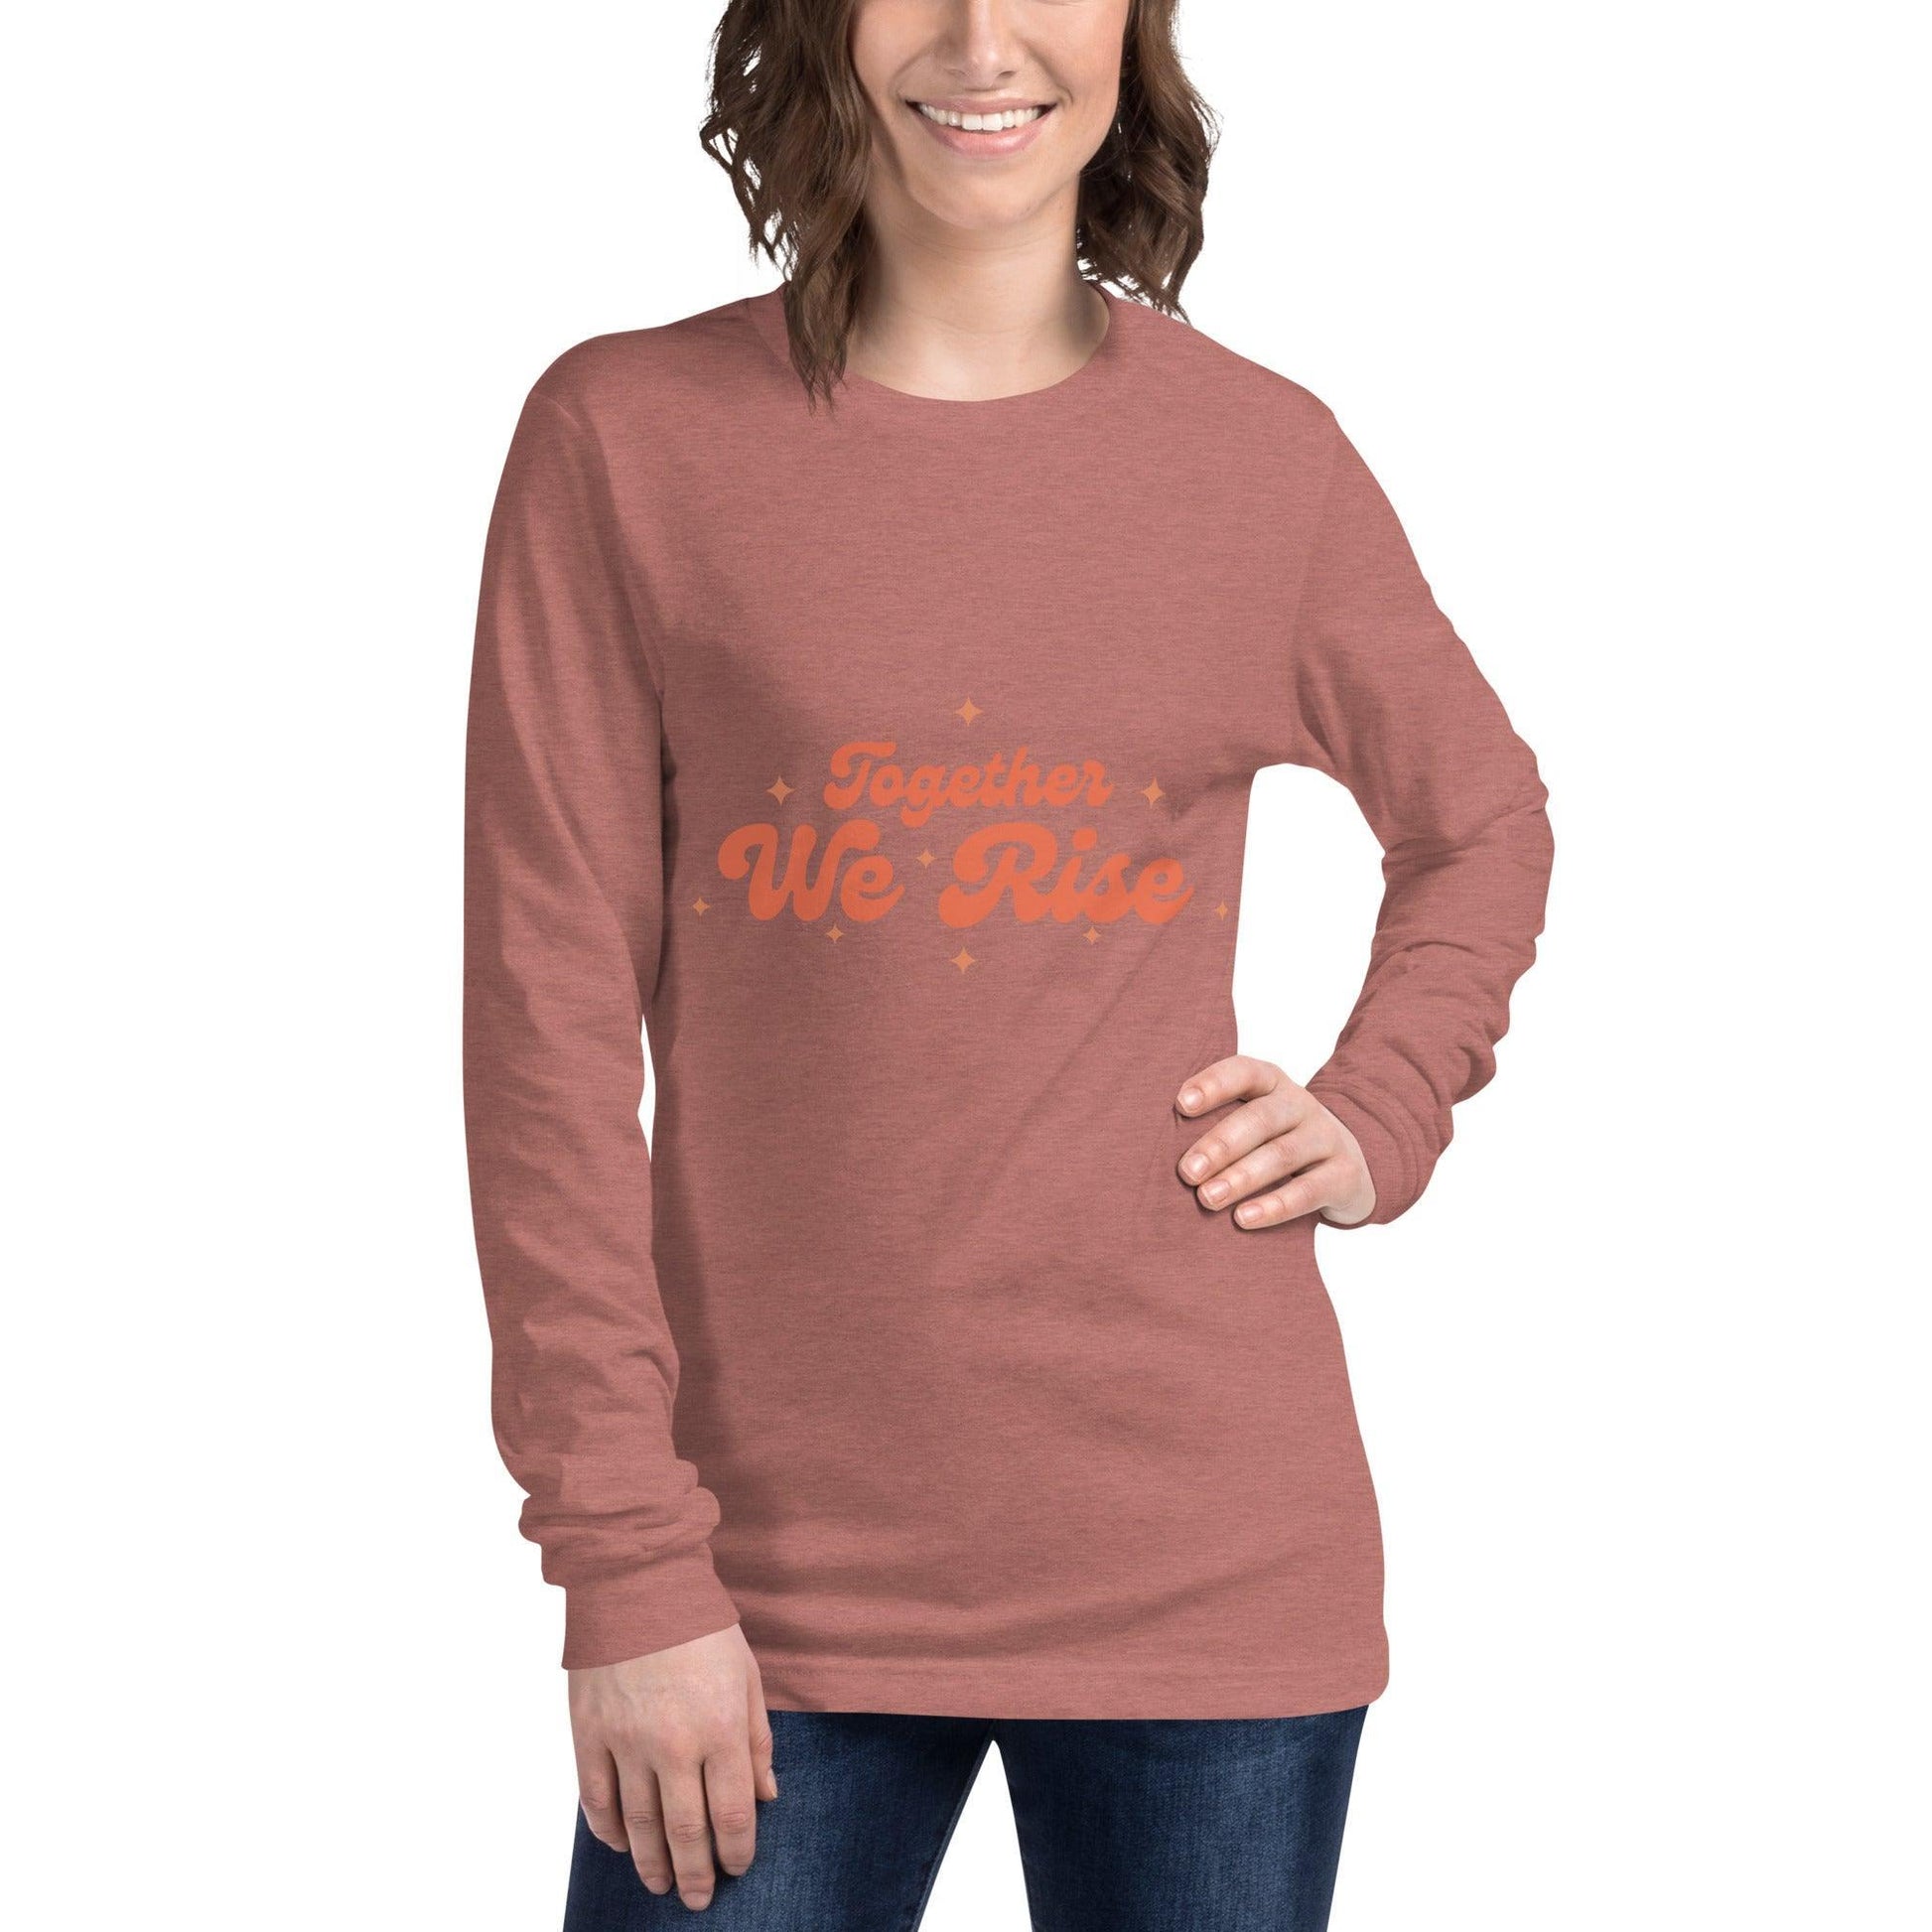 Camiseta manga larga "We Rise" | ¡La camiseta versátil perfecta para cualquier ocasión! - Silvornique